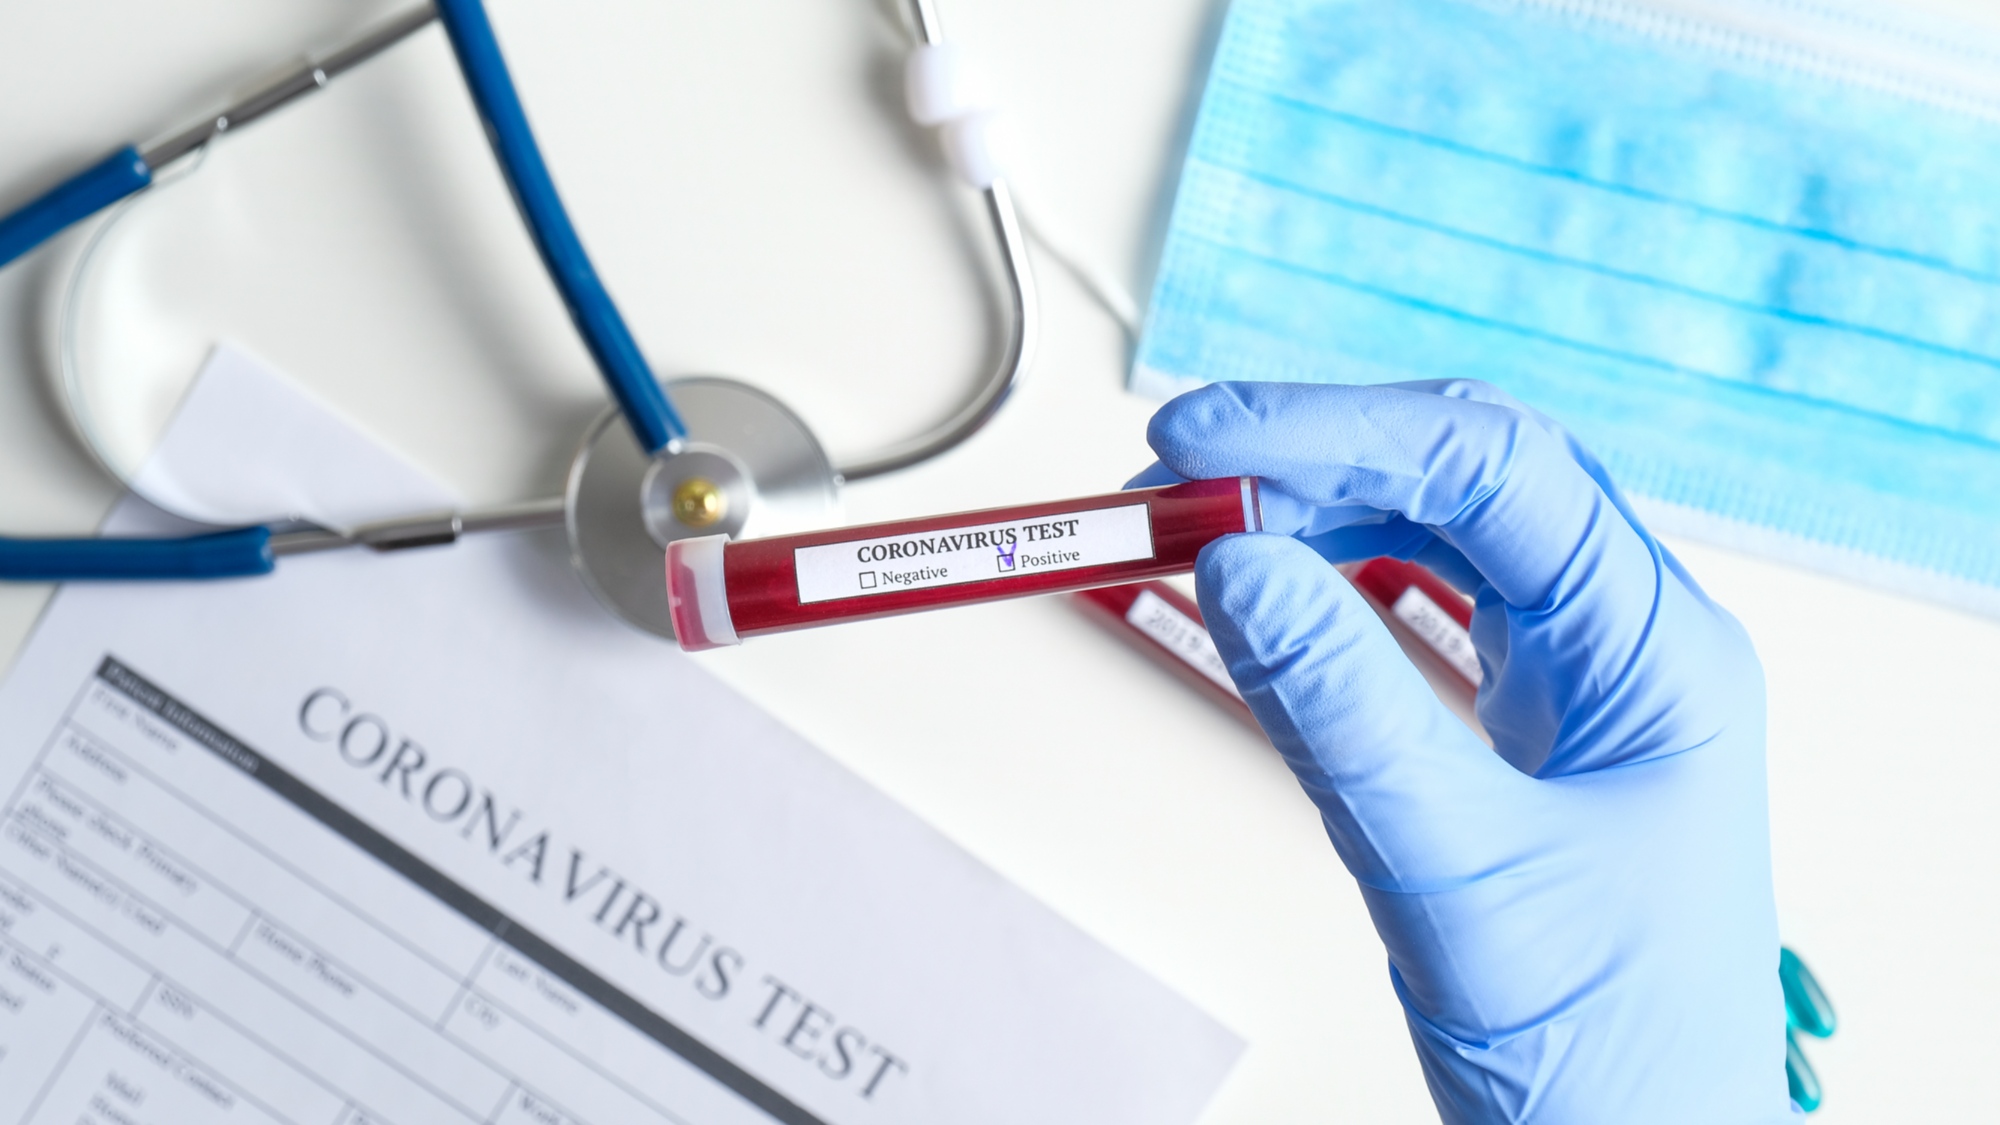 Coronavirus in Abruzzo, positivi a 3267, si registra 1 nuovo caso su un totale di 1295 tamponi analizzati